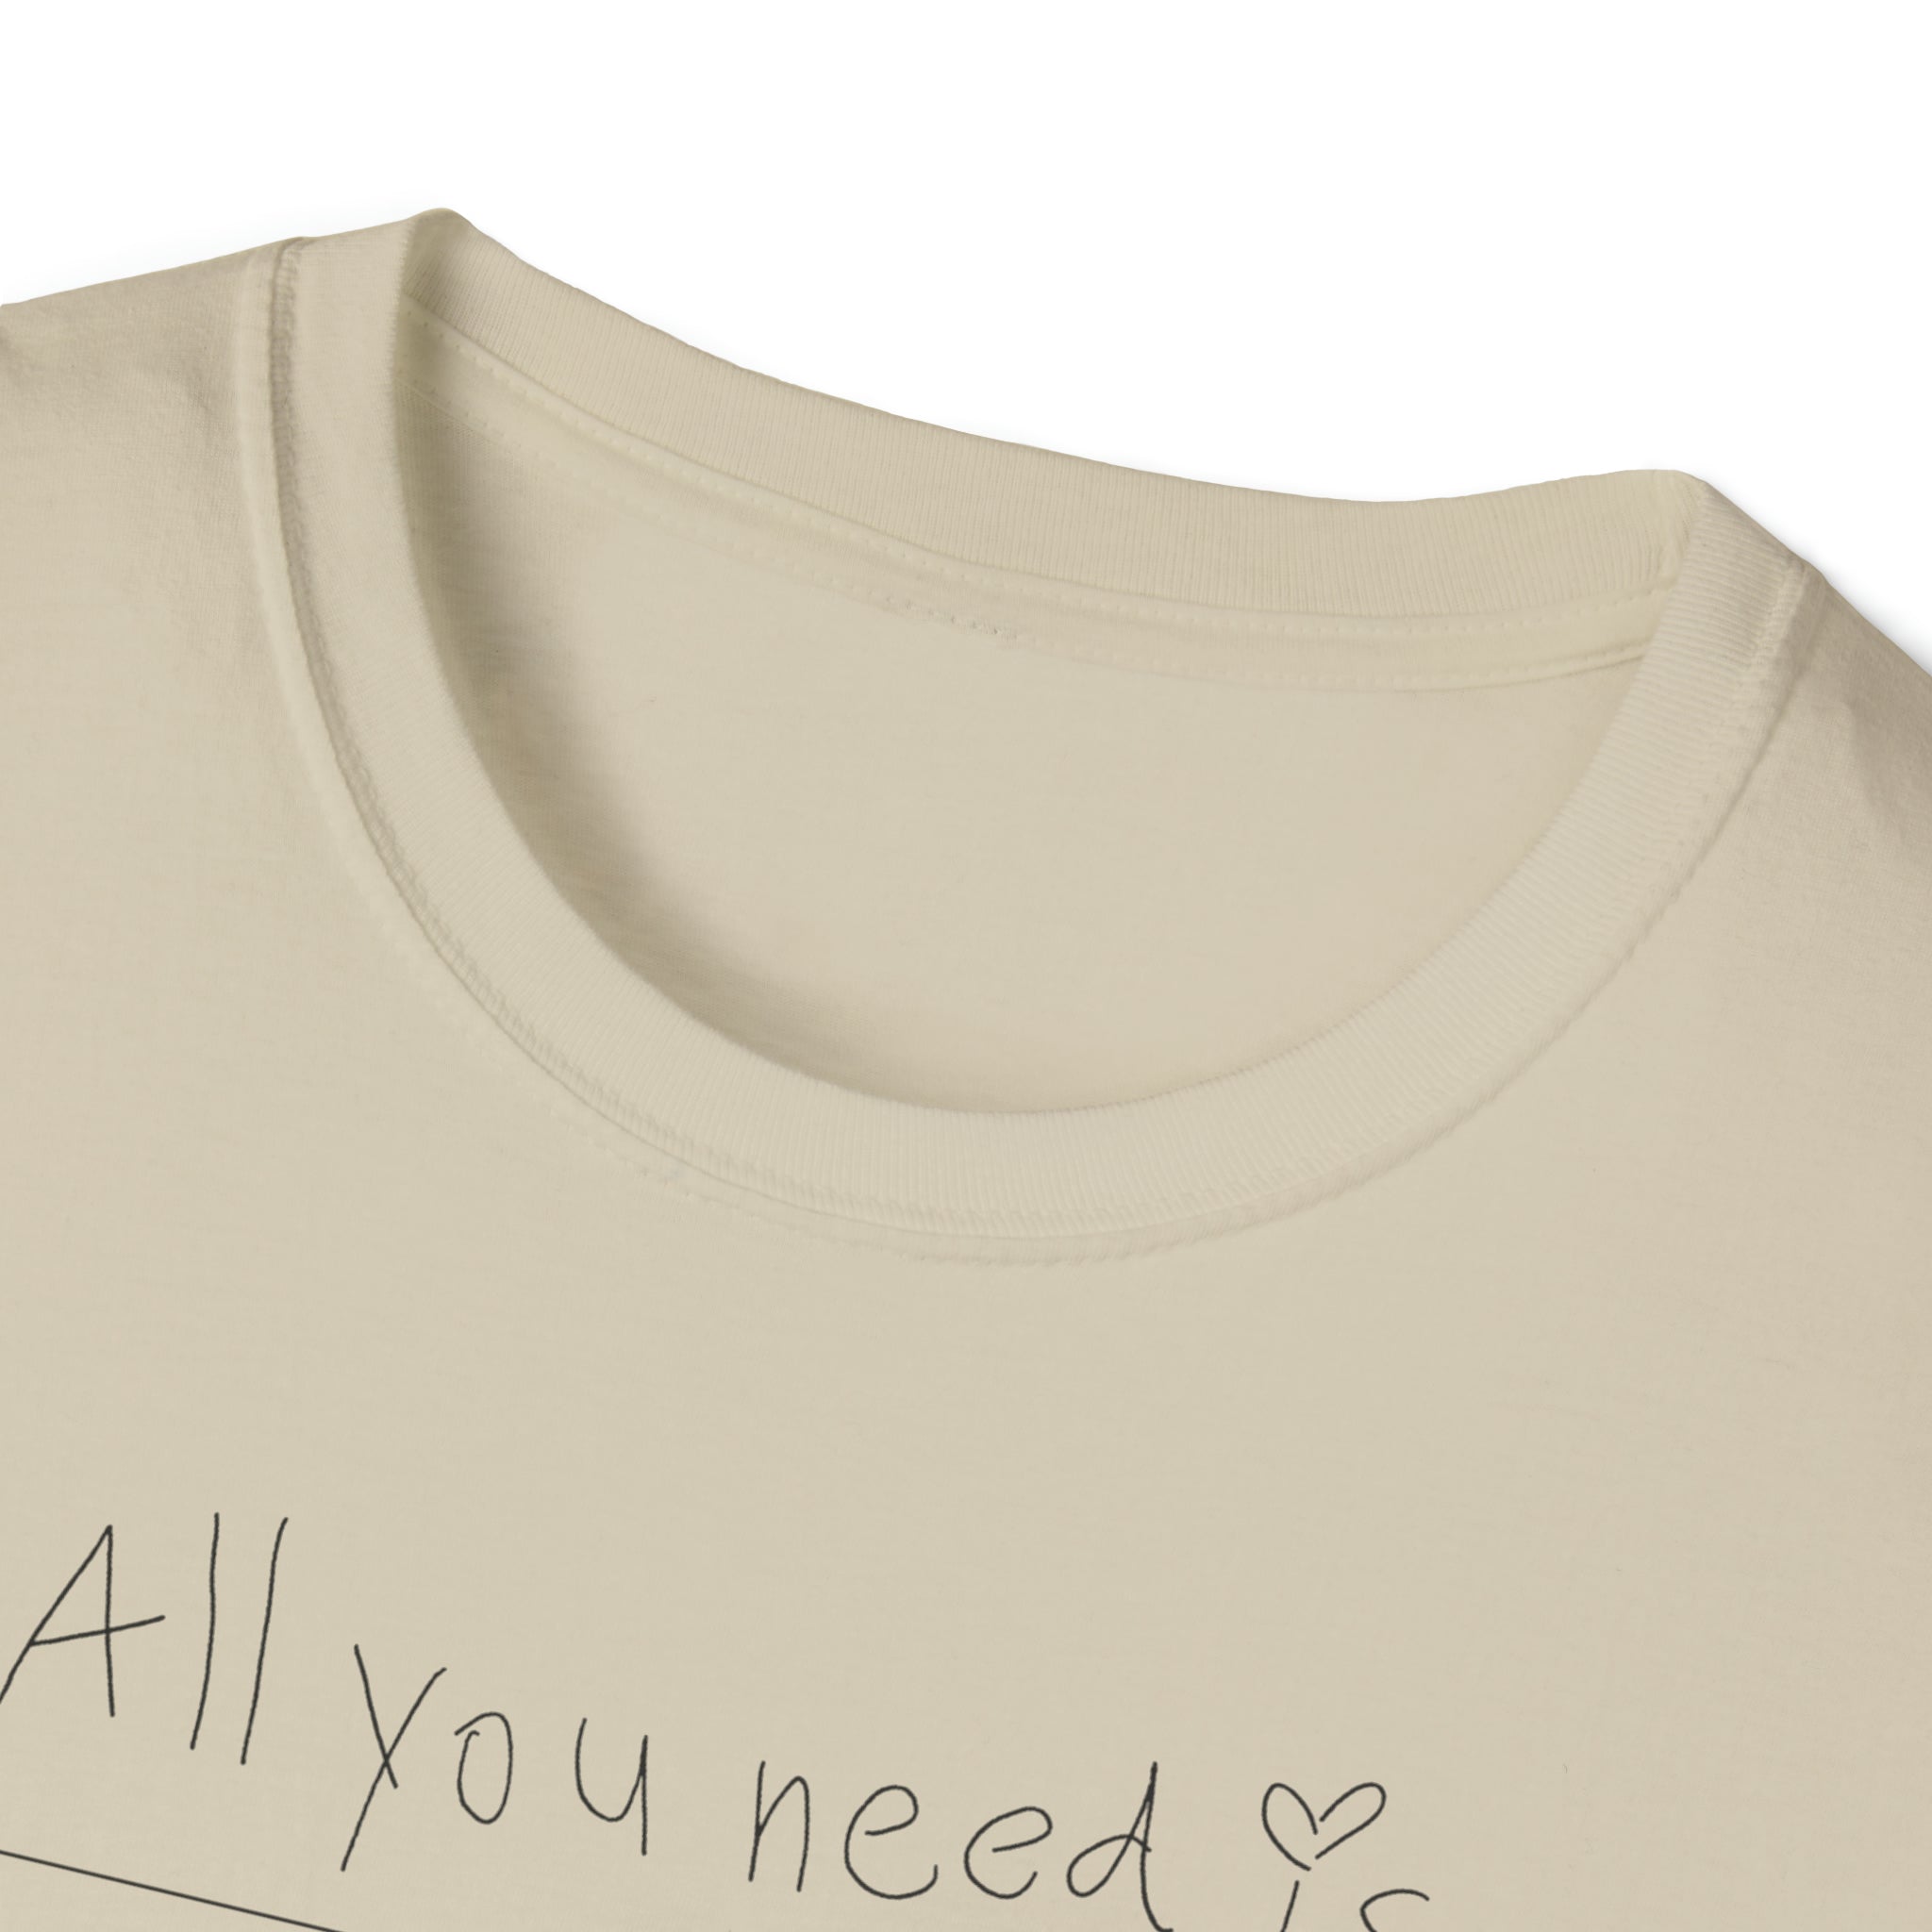 Beatles Unisex Softstyle T-Shirt